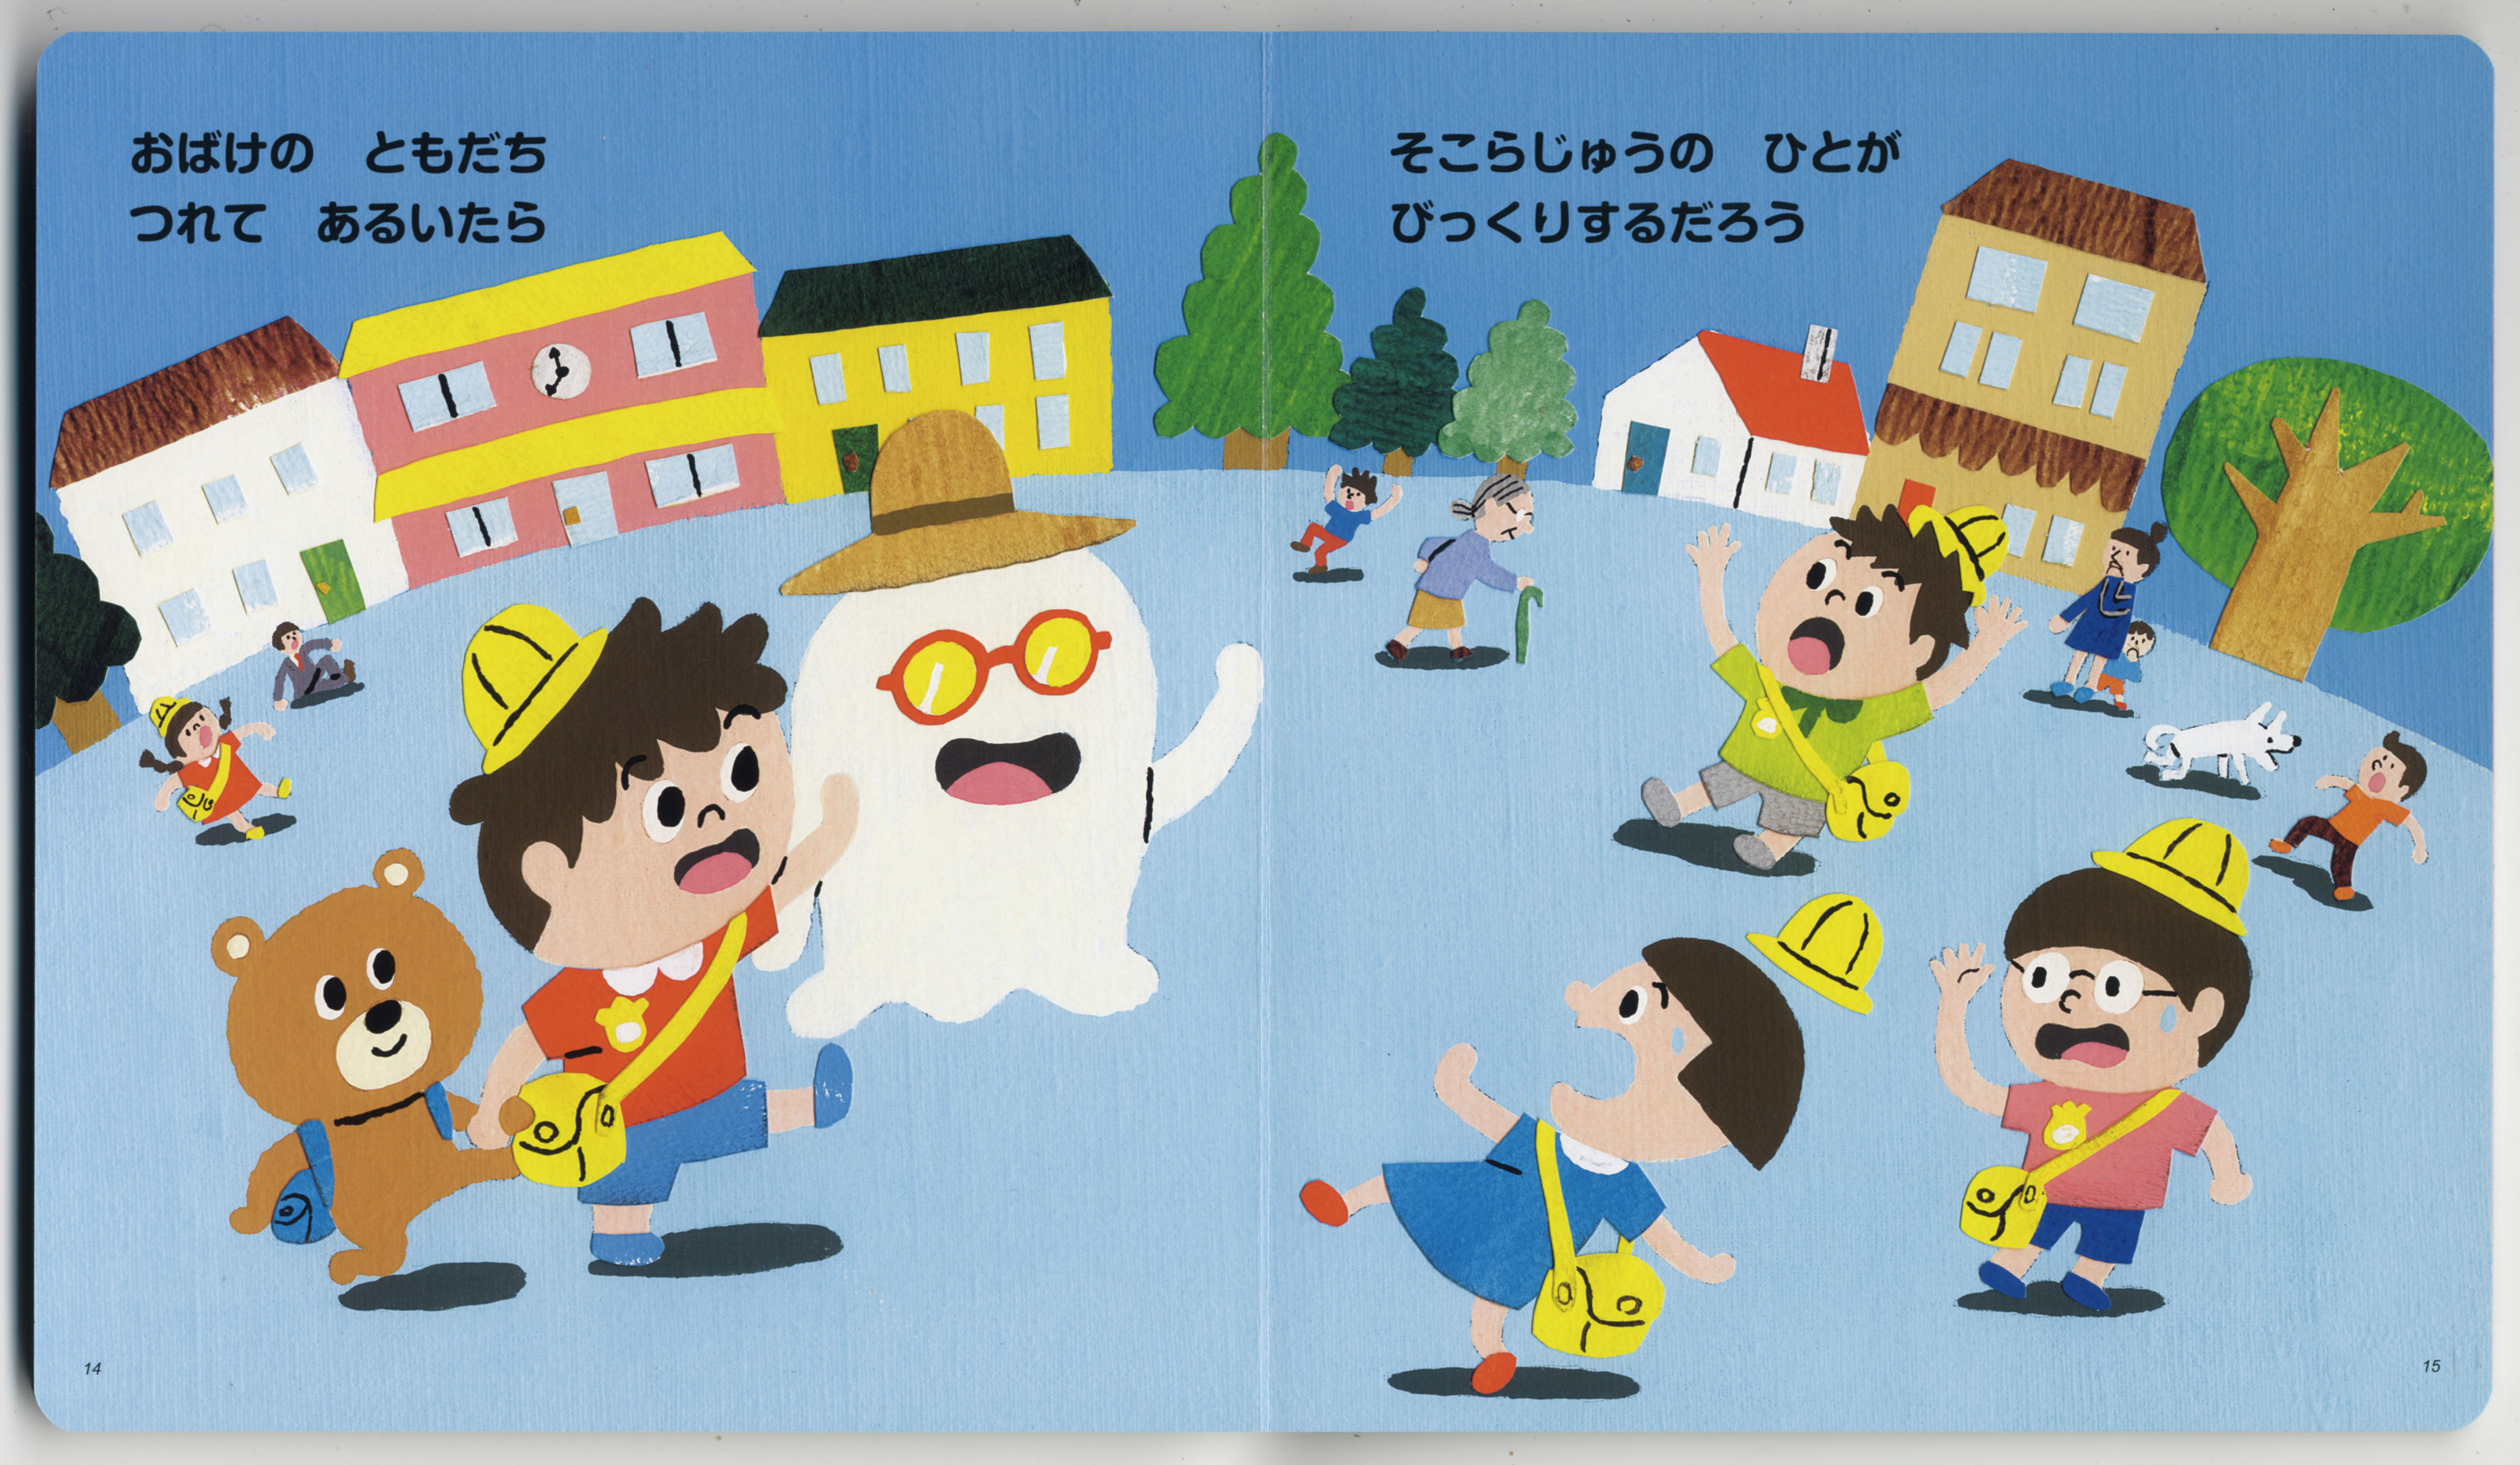 絵本「おばけなんてないさ」 – 絵描き 中川貴雄のホームページ